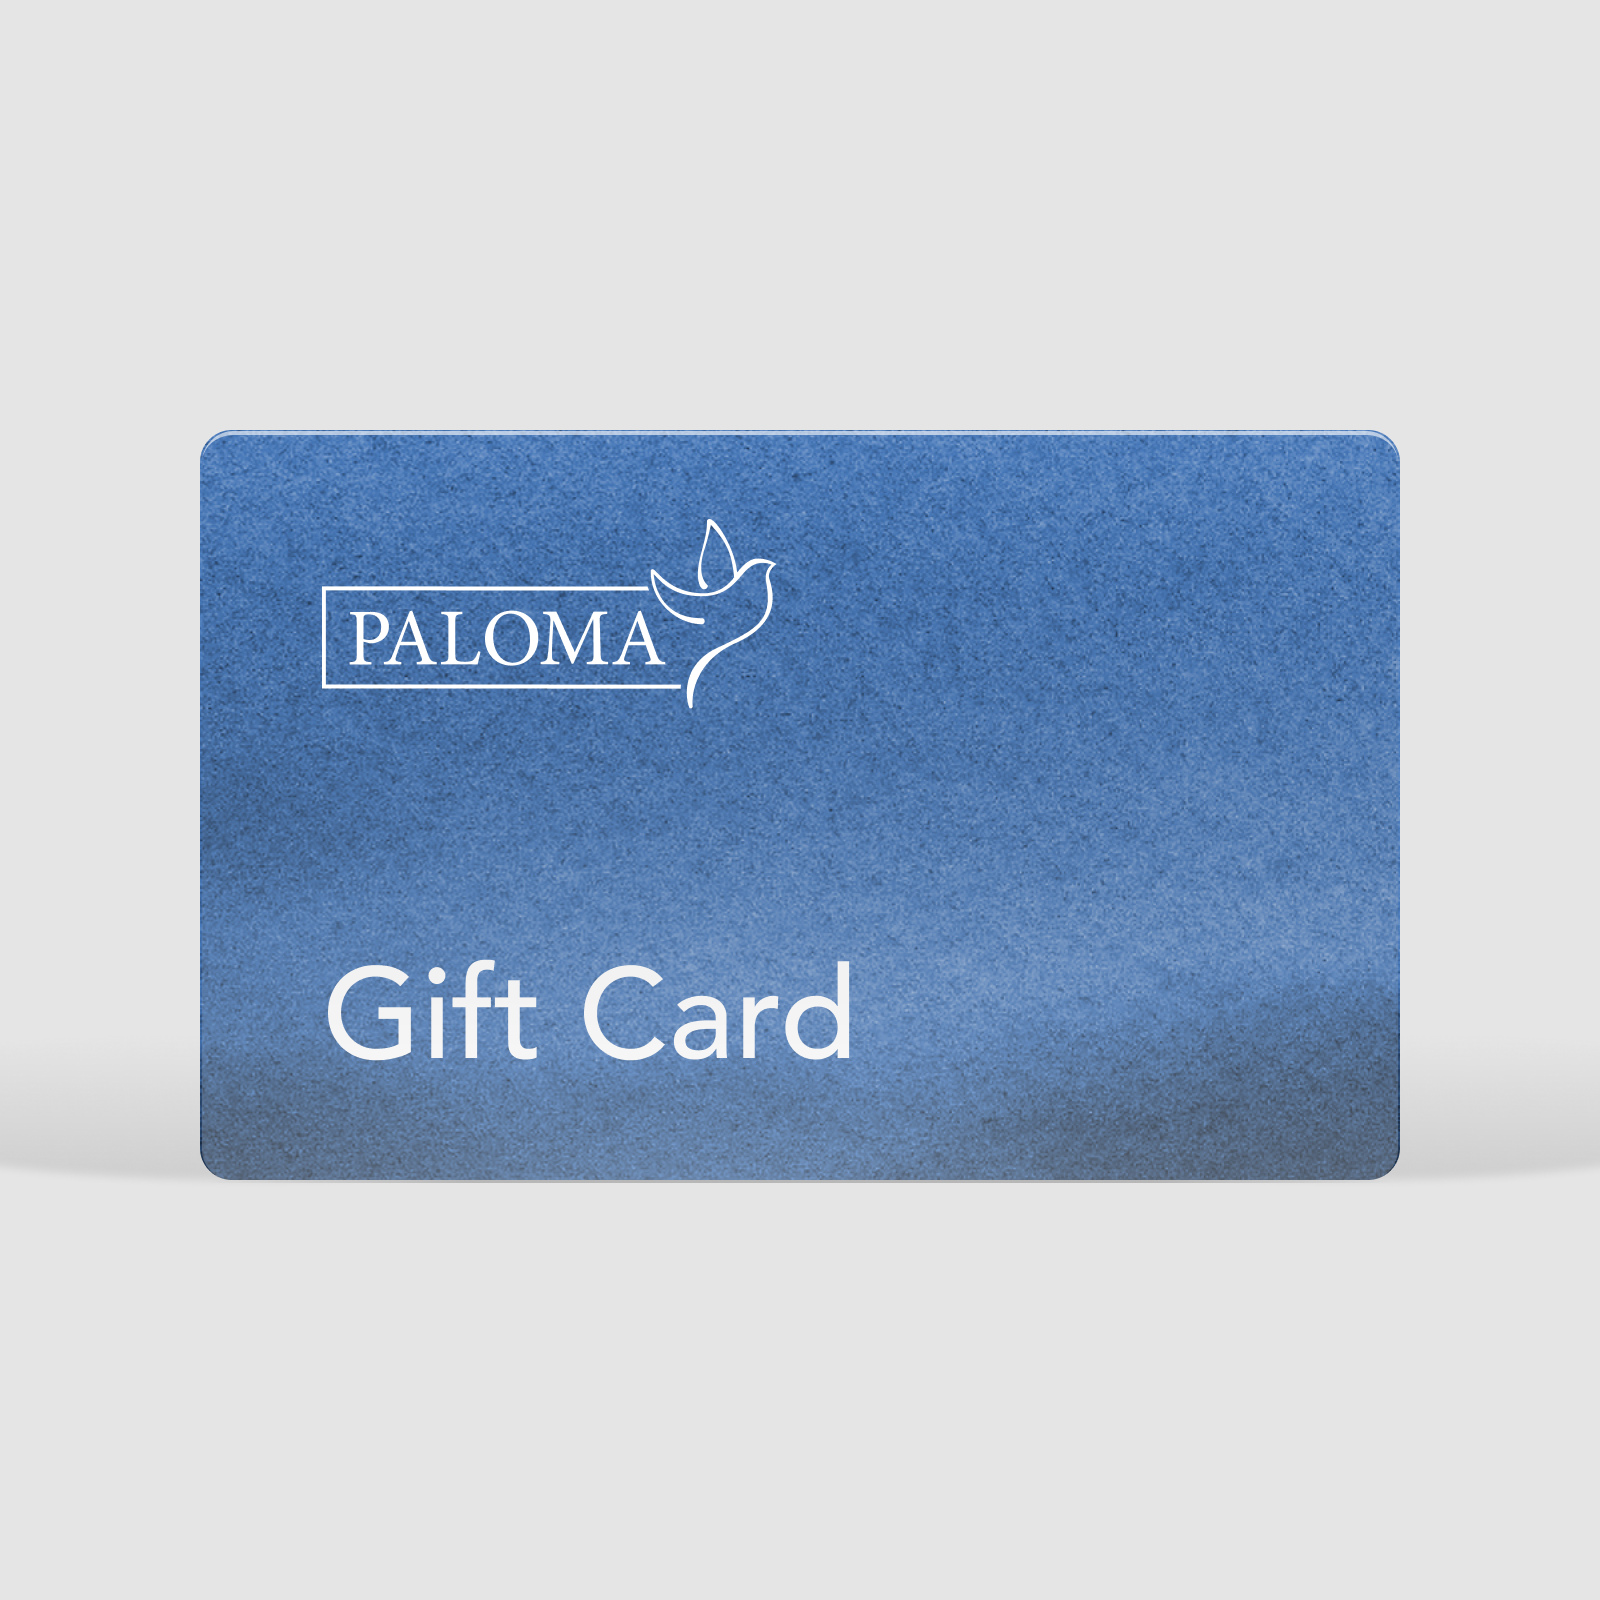 Paloma Gift Card